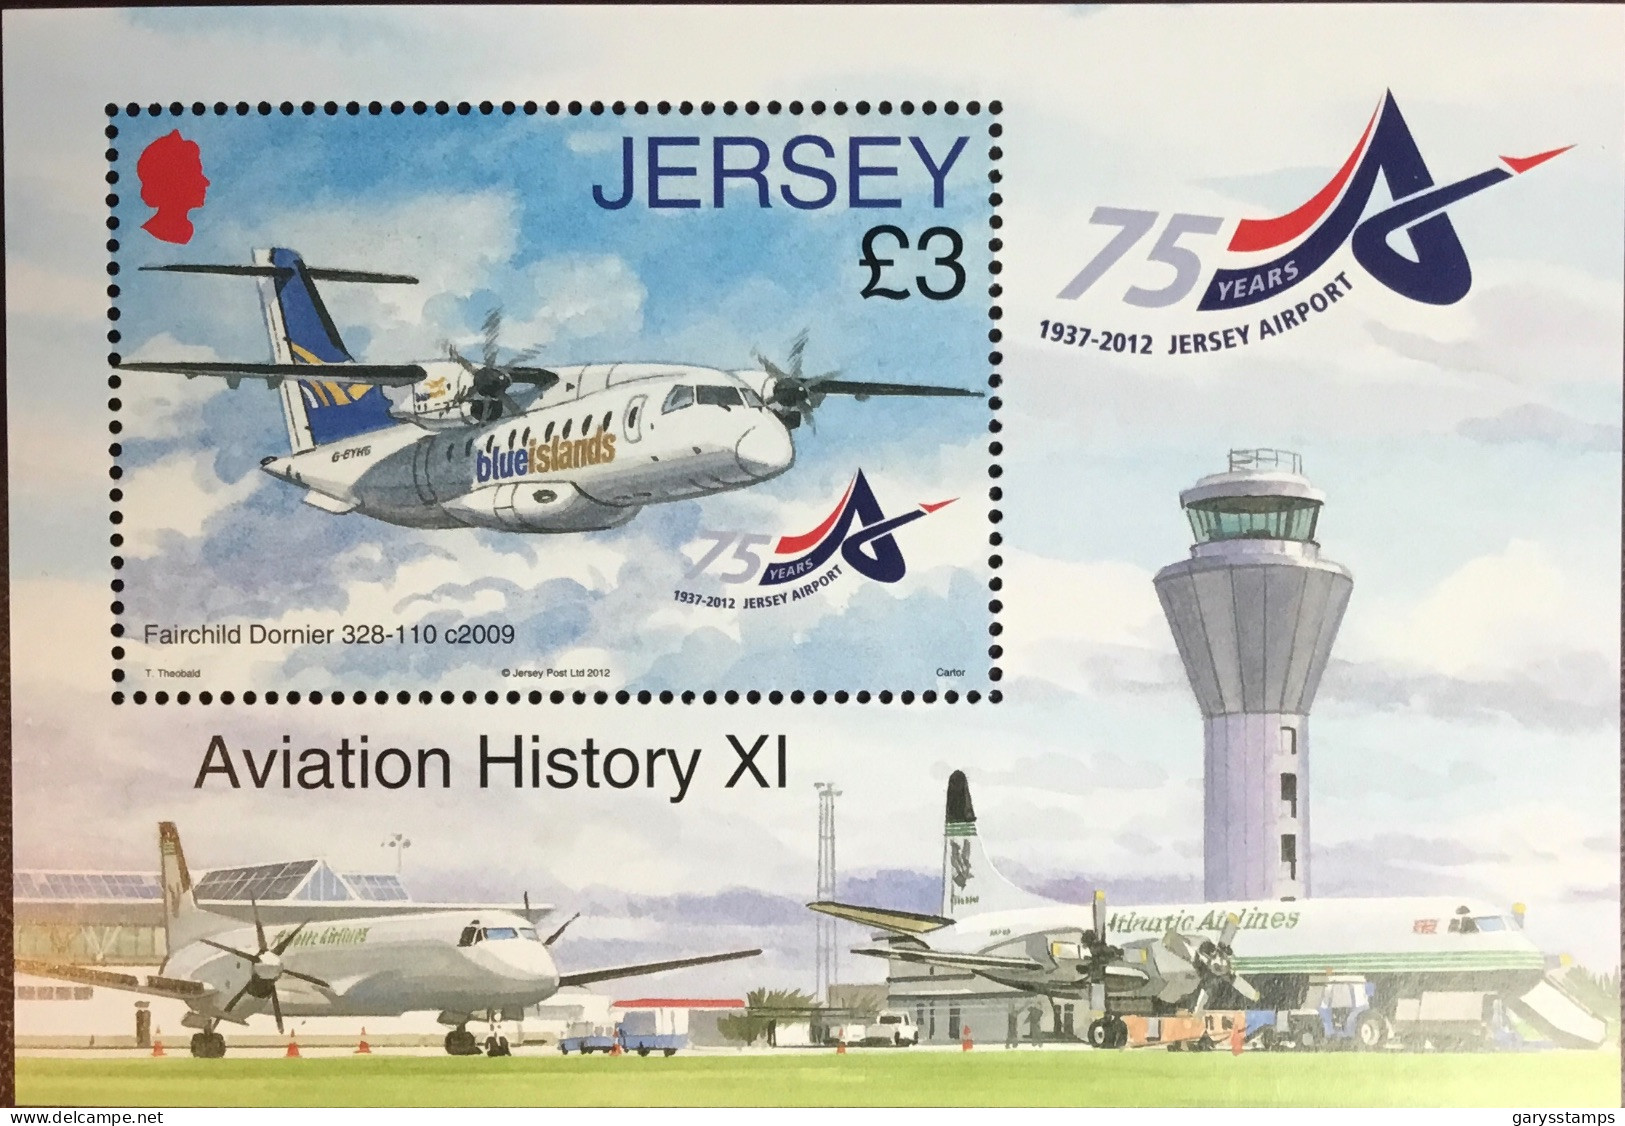 Jersey 2012 Jersey Airport Anniversary Minisheet MNH - Jersey